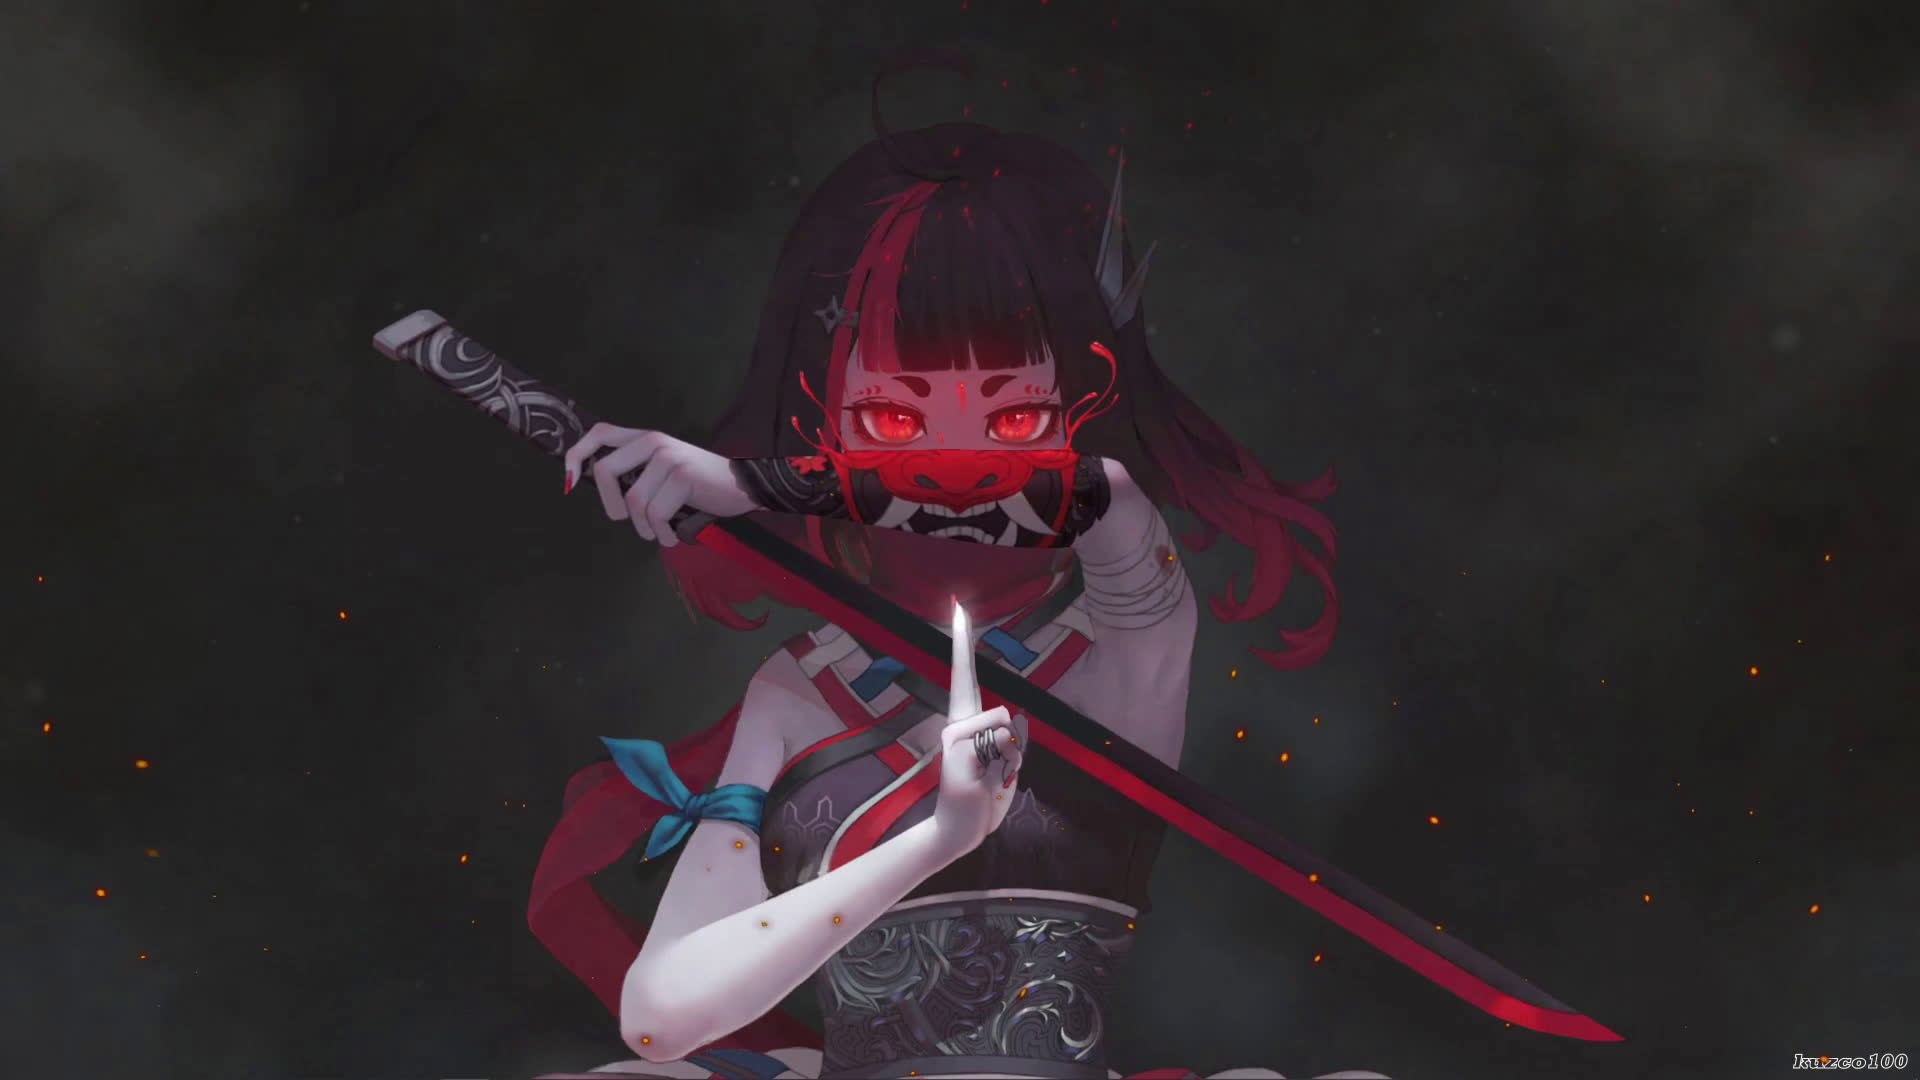 Samurai Girl and Oni Mask on Hand Live Wallpaper